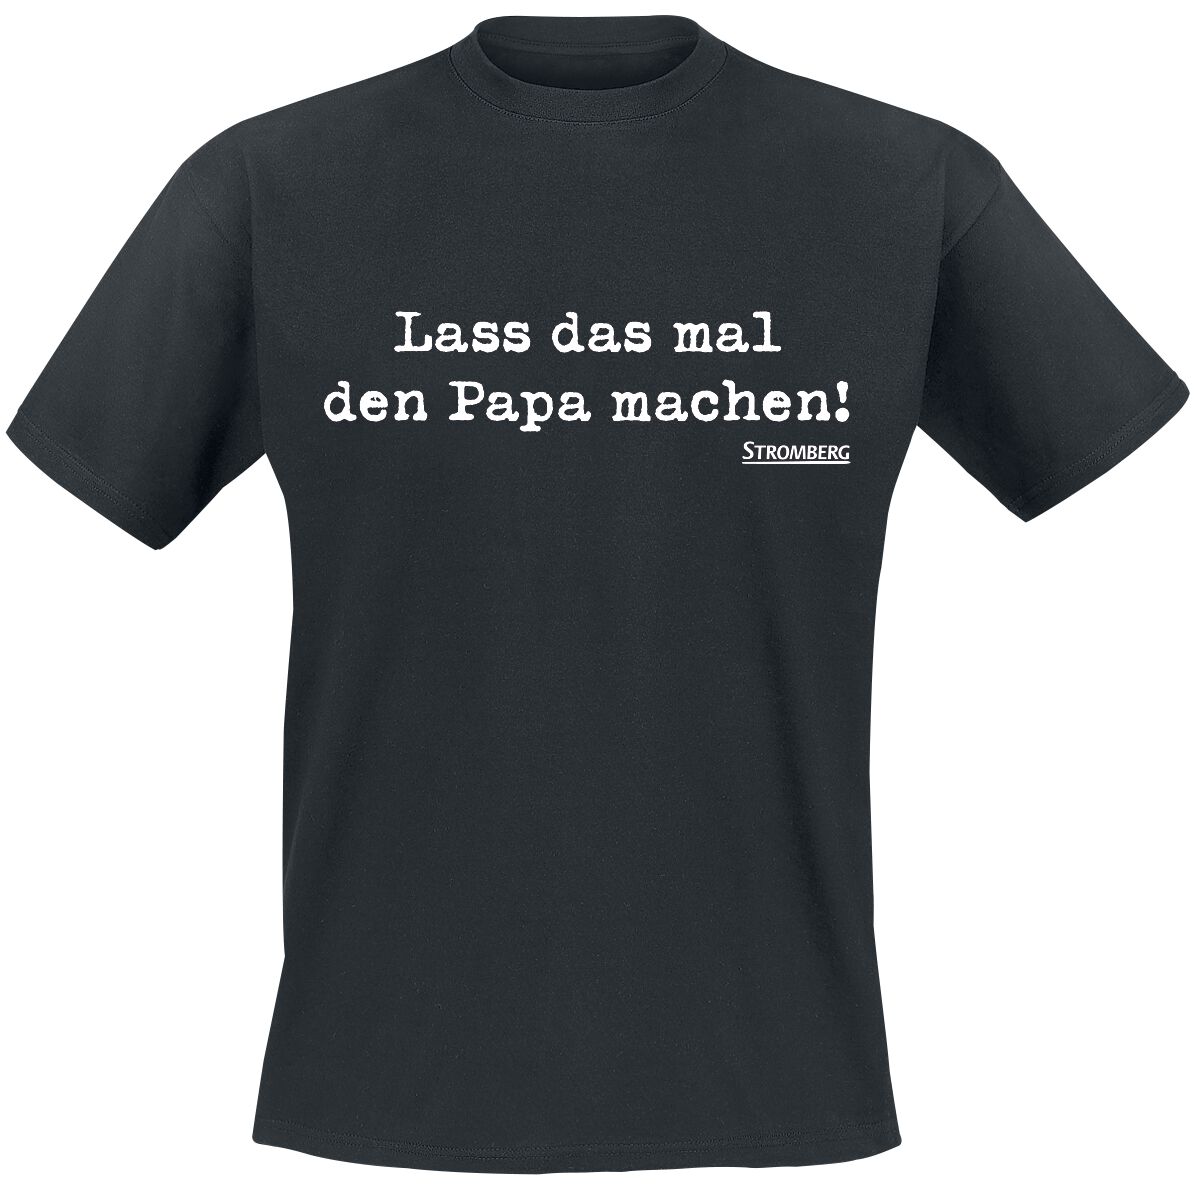 Stromberg Lass das mal den Papa machen! T-Shirt schwarz in XL